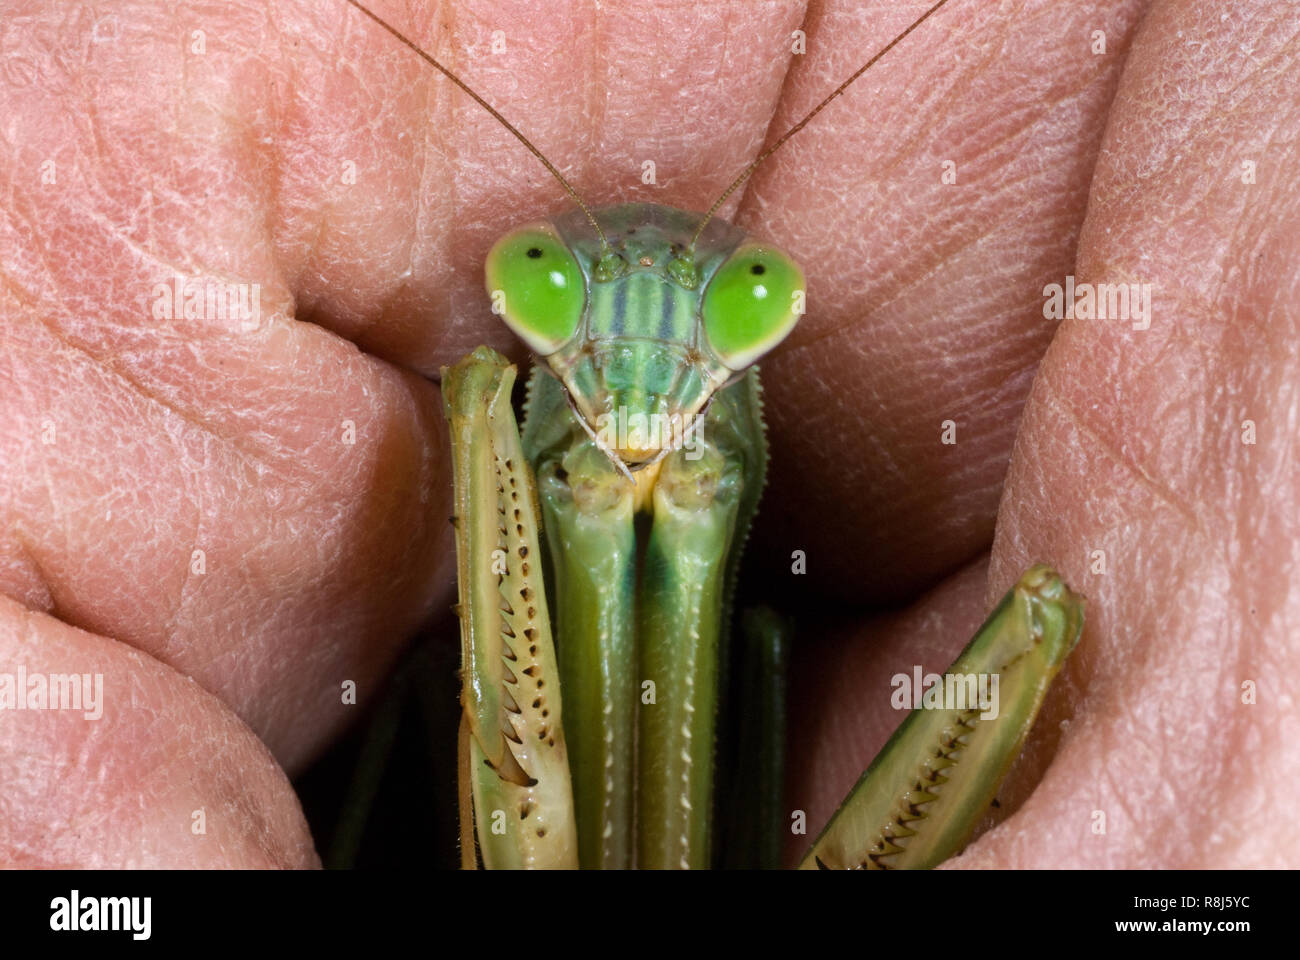 Mantis Mantis religiosa (européenne) a tenu dans la main pour montrer l'échelle. Priant mantids ne mordent pas lorsqu'il est maintenu, mais leurs puissants/moins, couverts de Sharp Banque D'Images